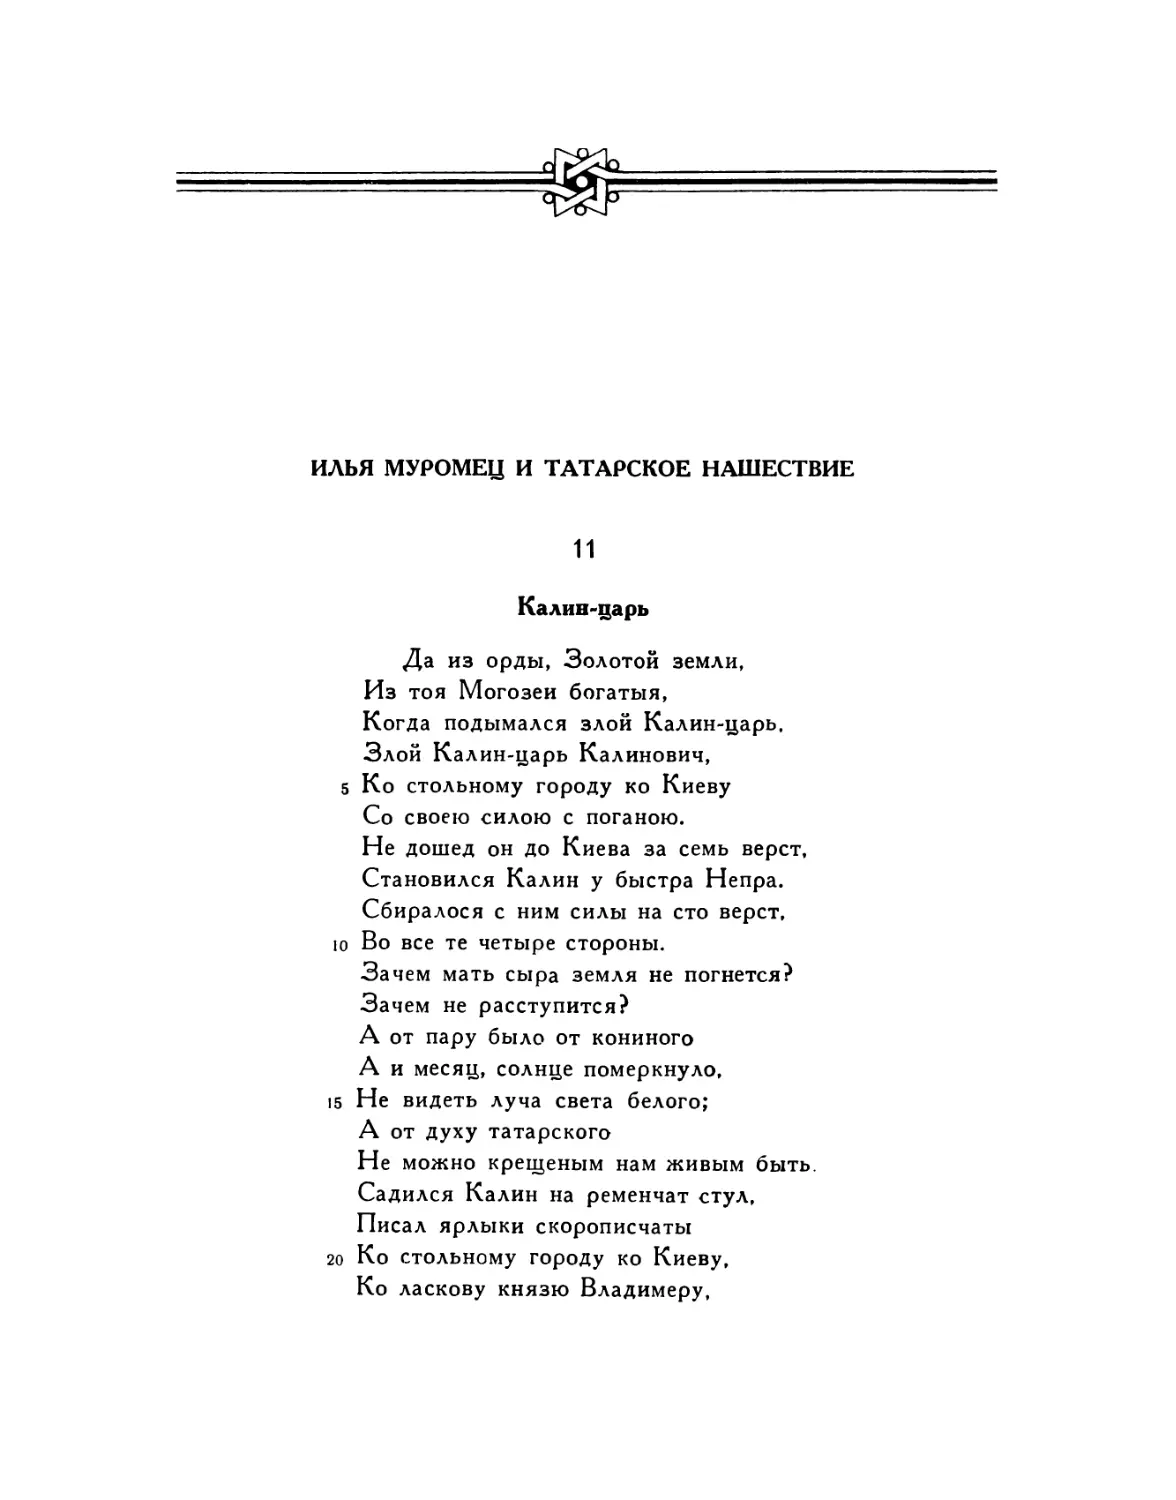 Илья Муромец и татарское нашествие